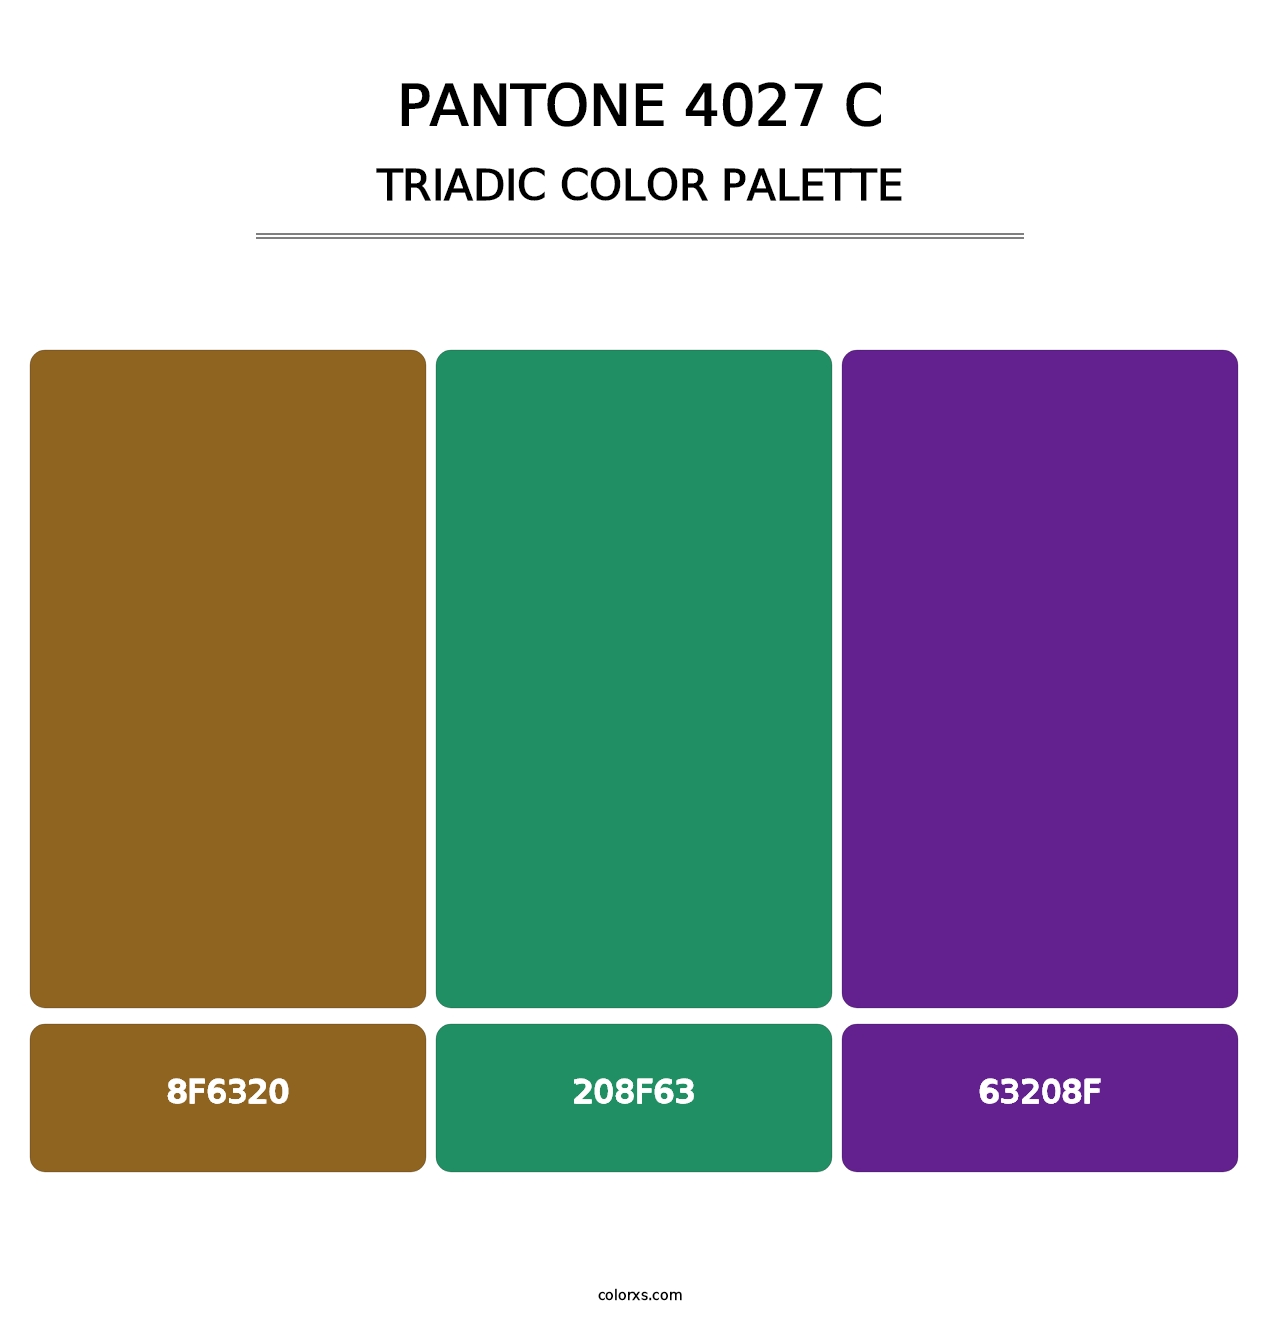 PANTONE 4027 C - Triadic Color Palette